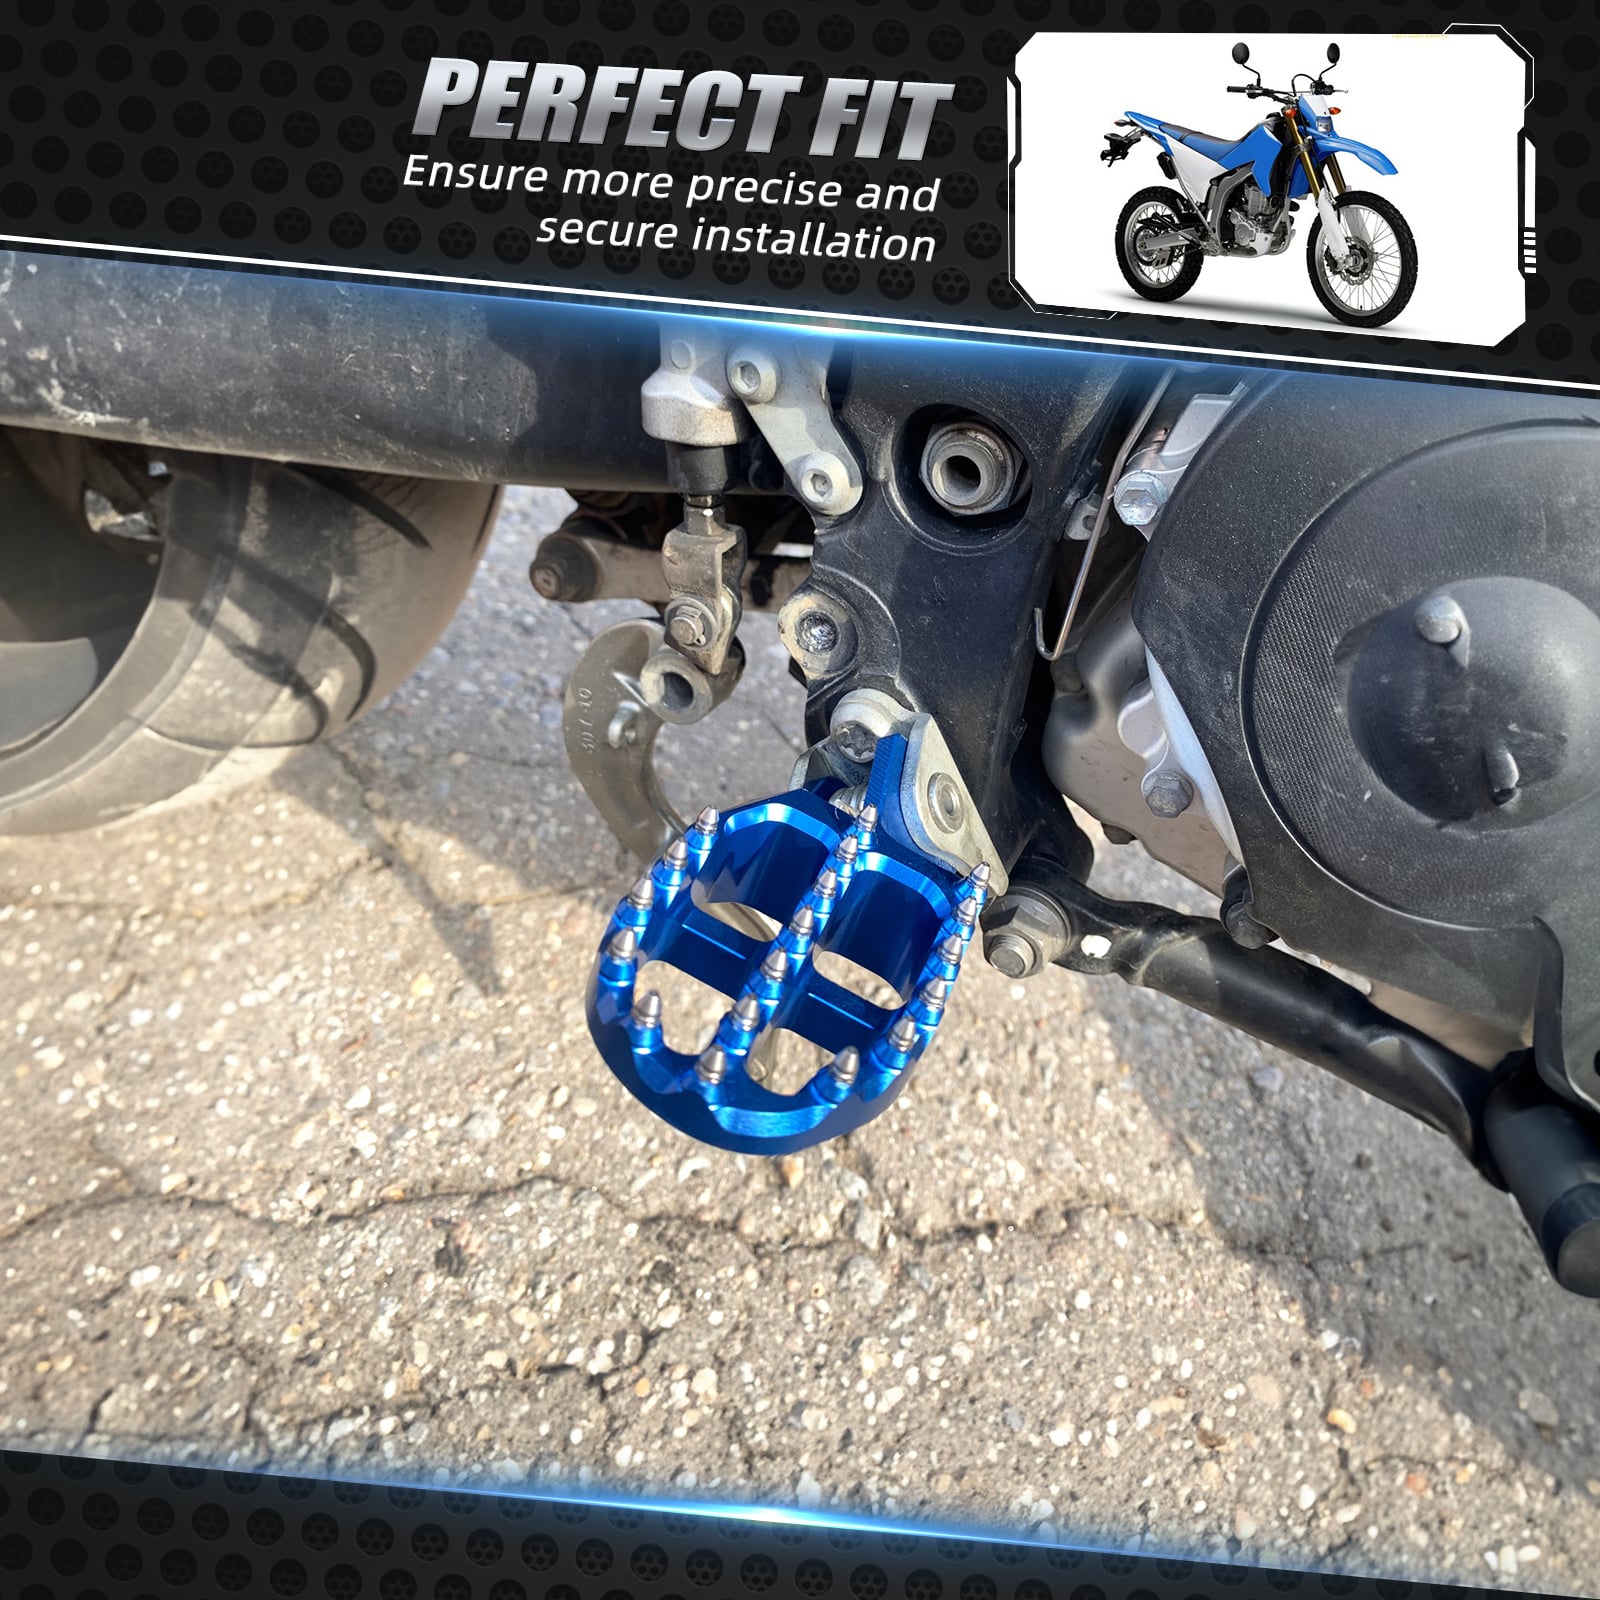 Bike Foot pegs | Motorcycle Brake Pedal | Bud Footpegs |